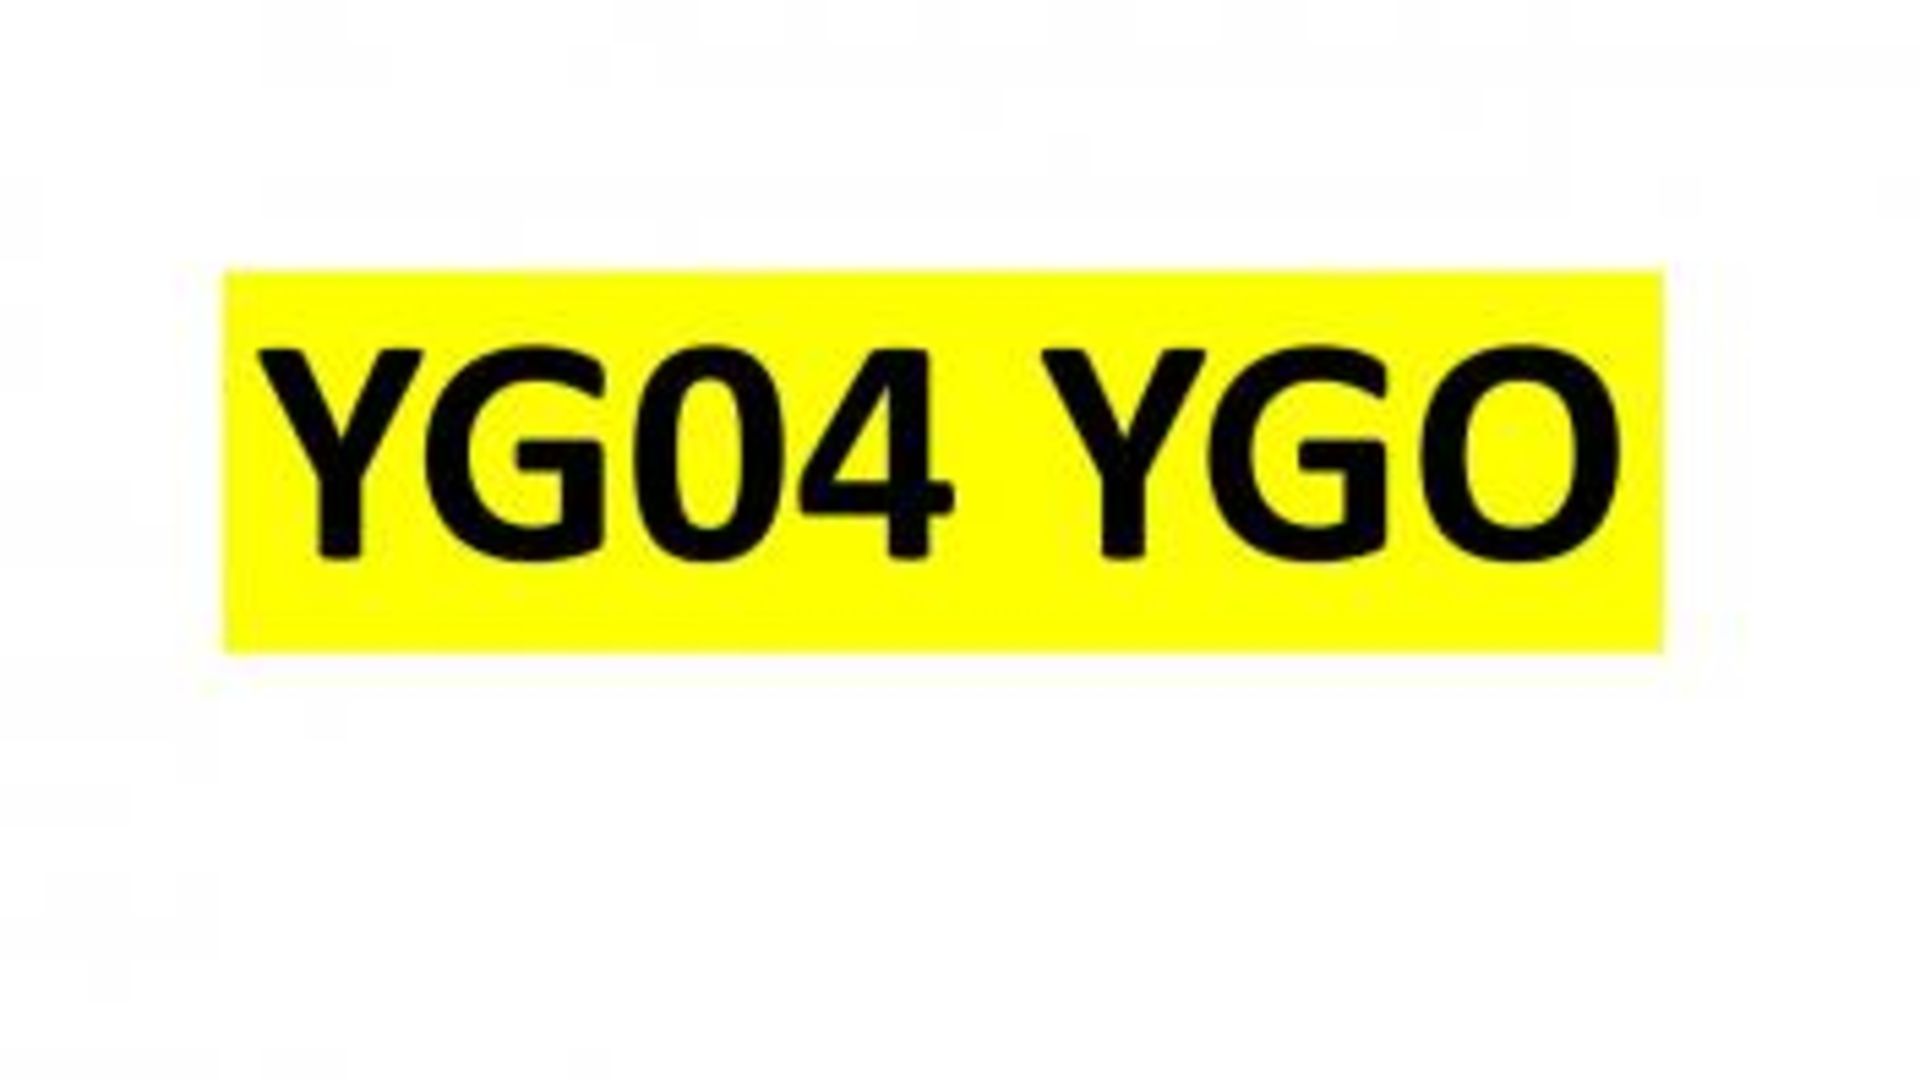 Registration - YG04 YGO